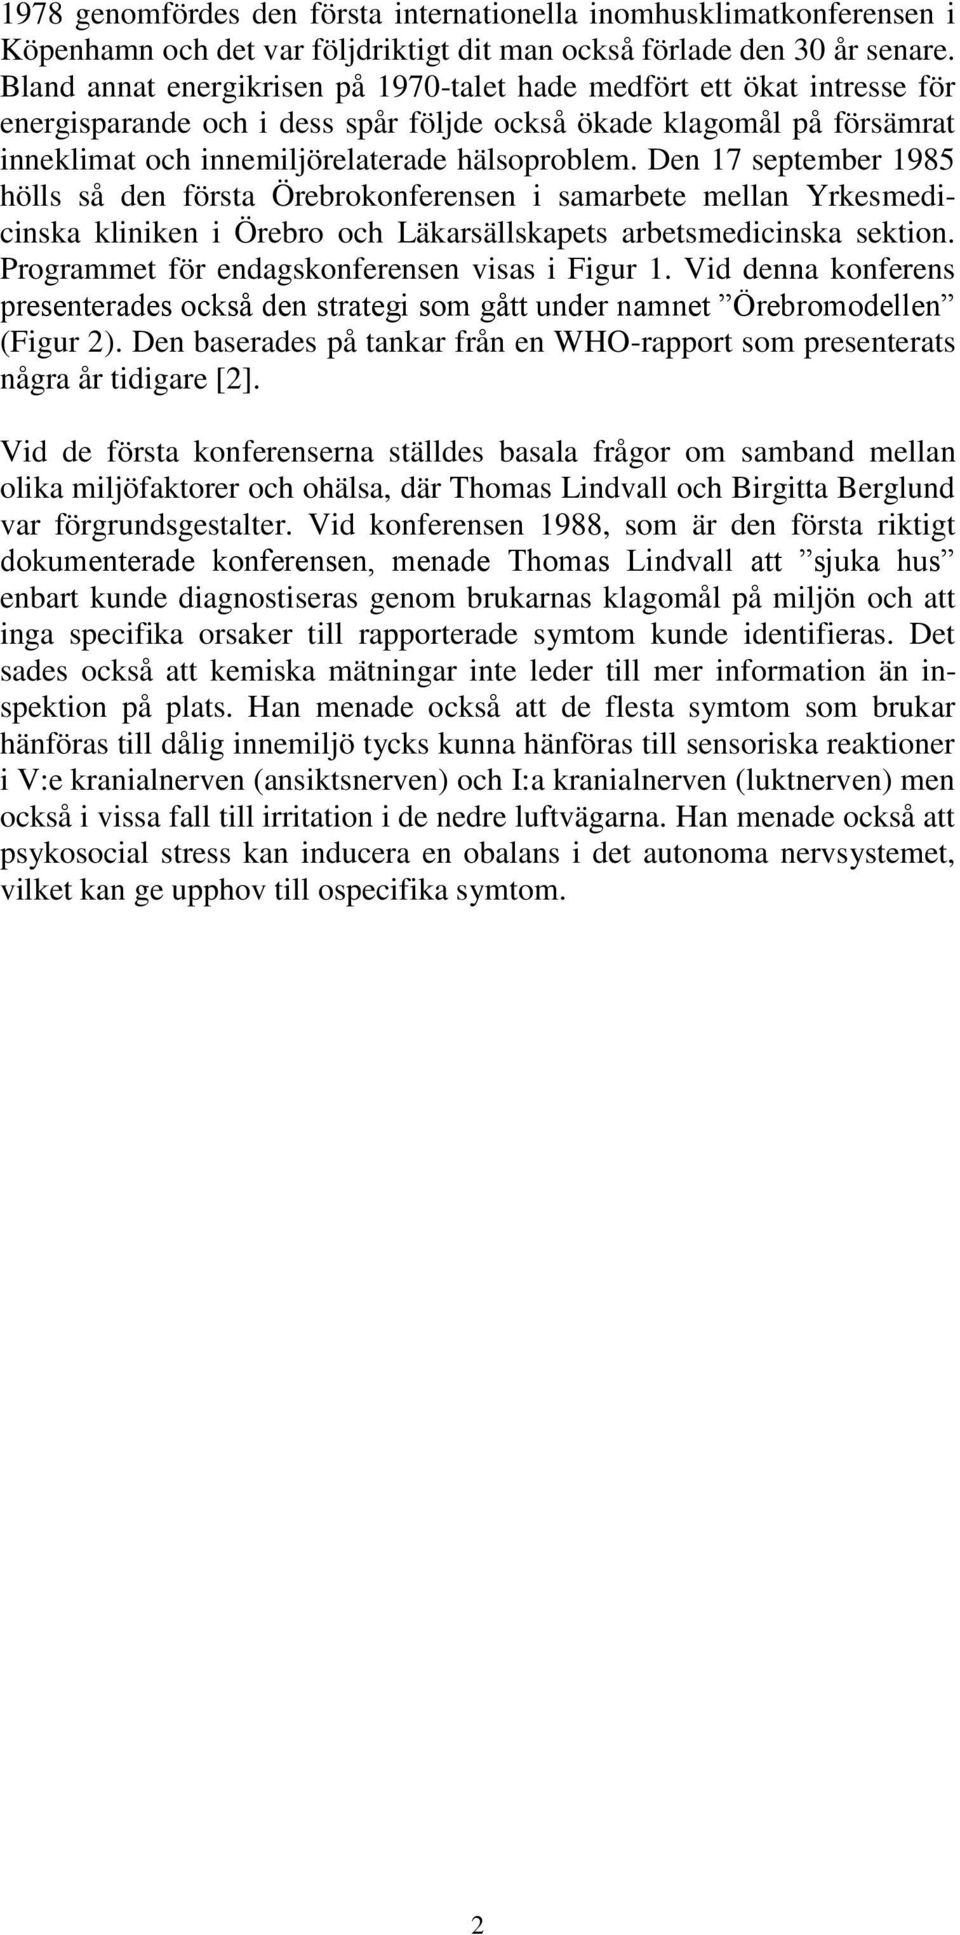 Den 17 september 1985 hölls så den första Örebrokonferensen i samarbete mellan Yrkesmedicinska kliniken i Örebro och Läkarsällskapets arbetsmedicinska sektion.